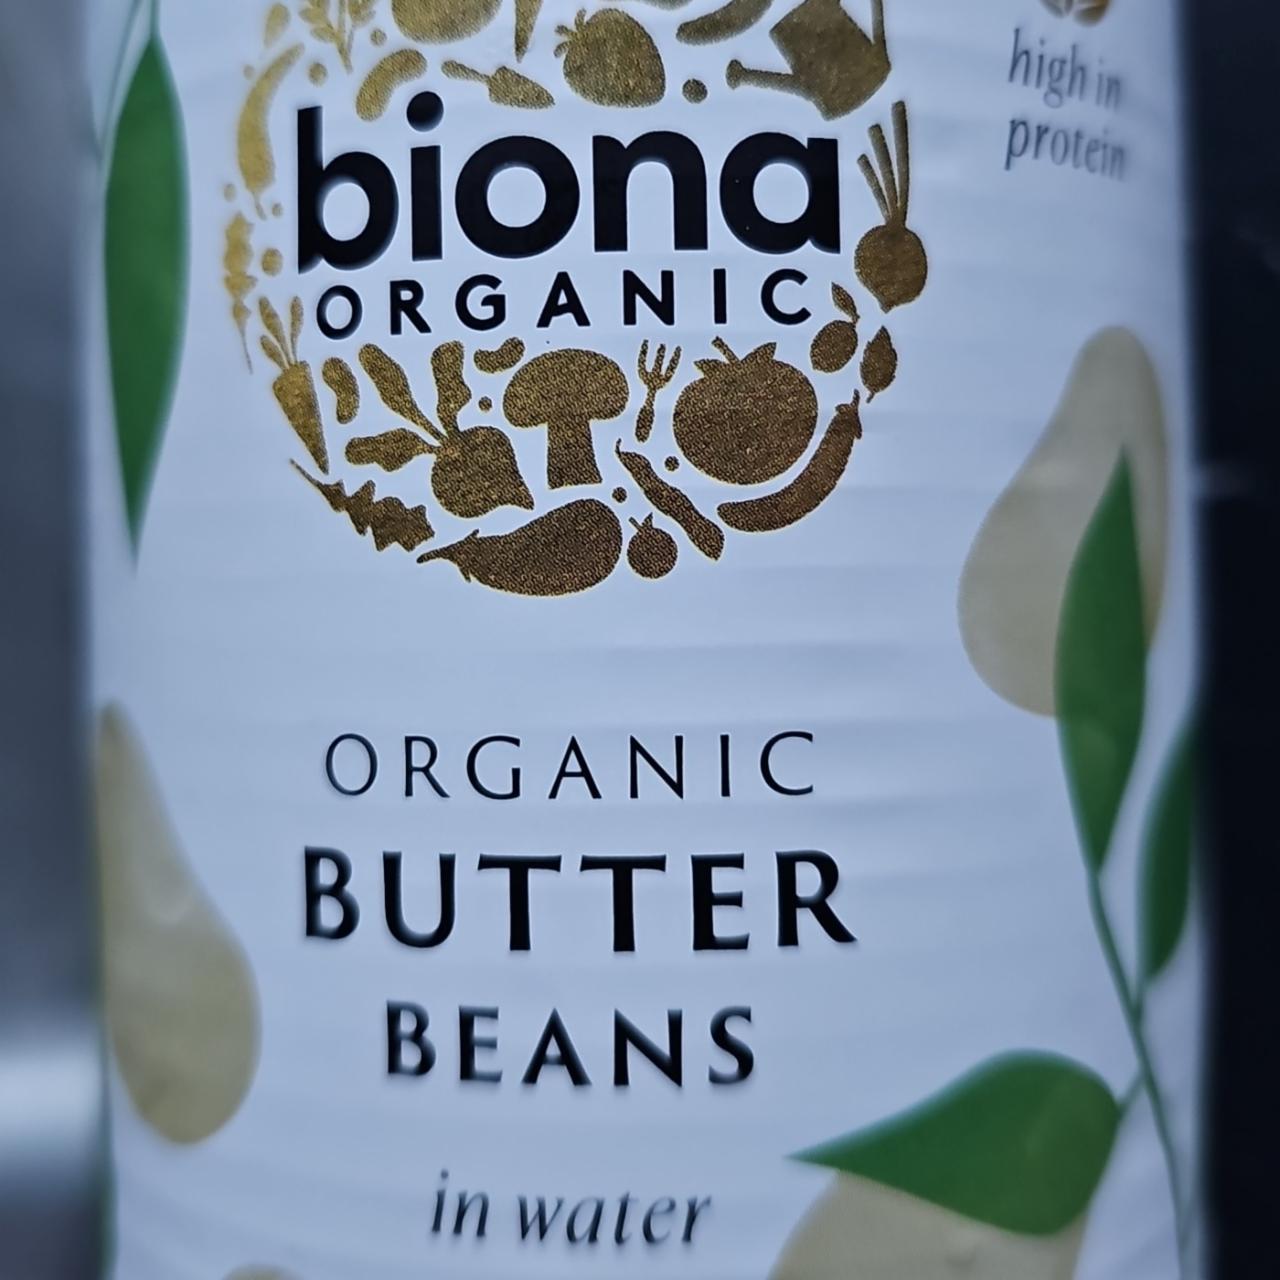 Fotografie - organic butter beans Biona